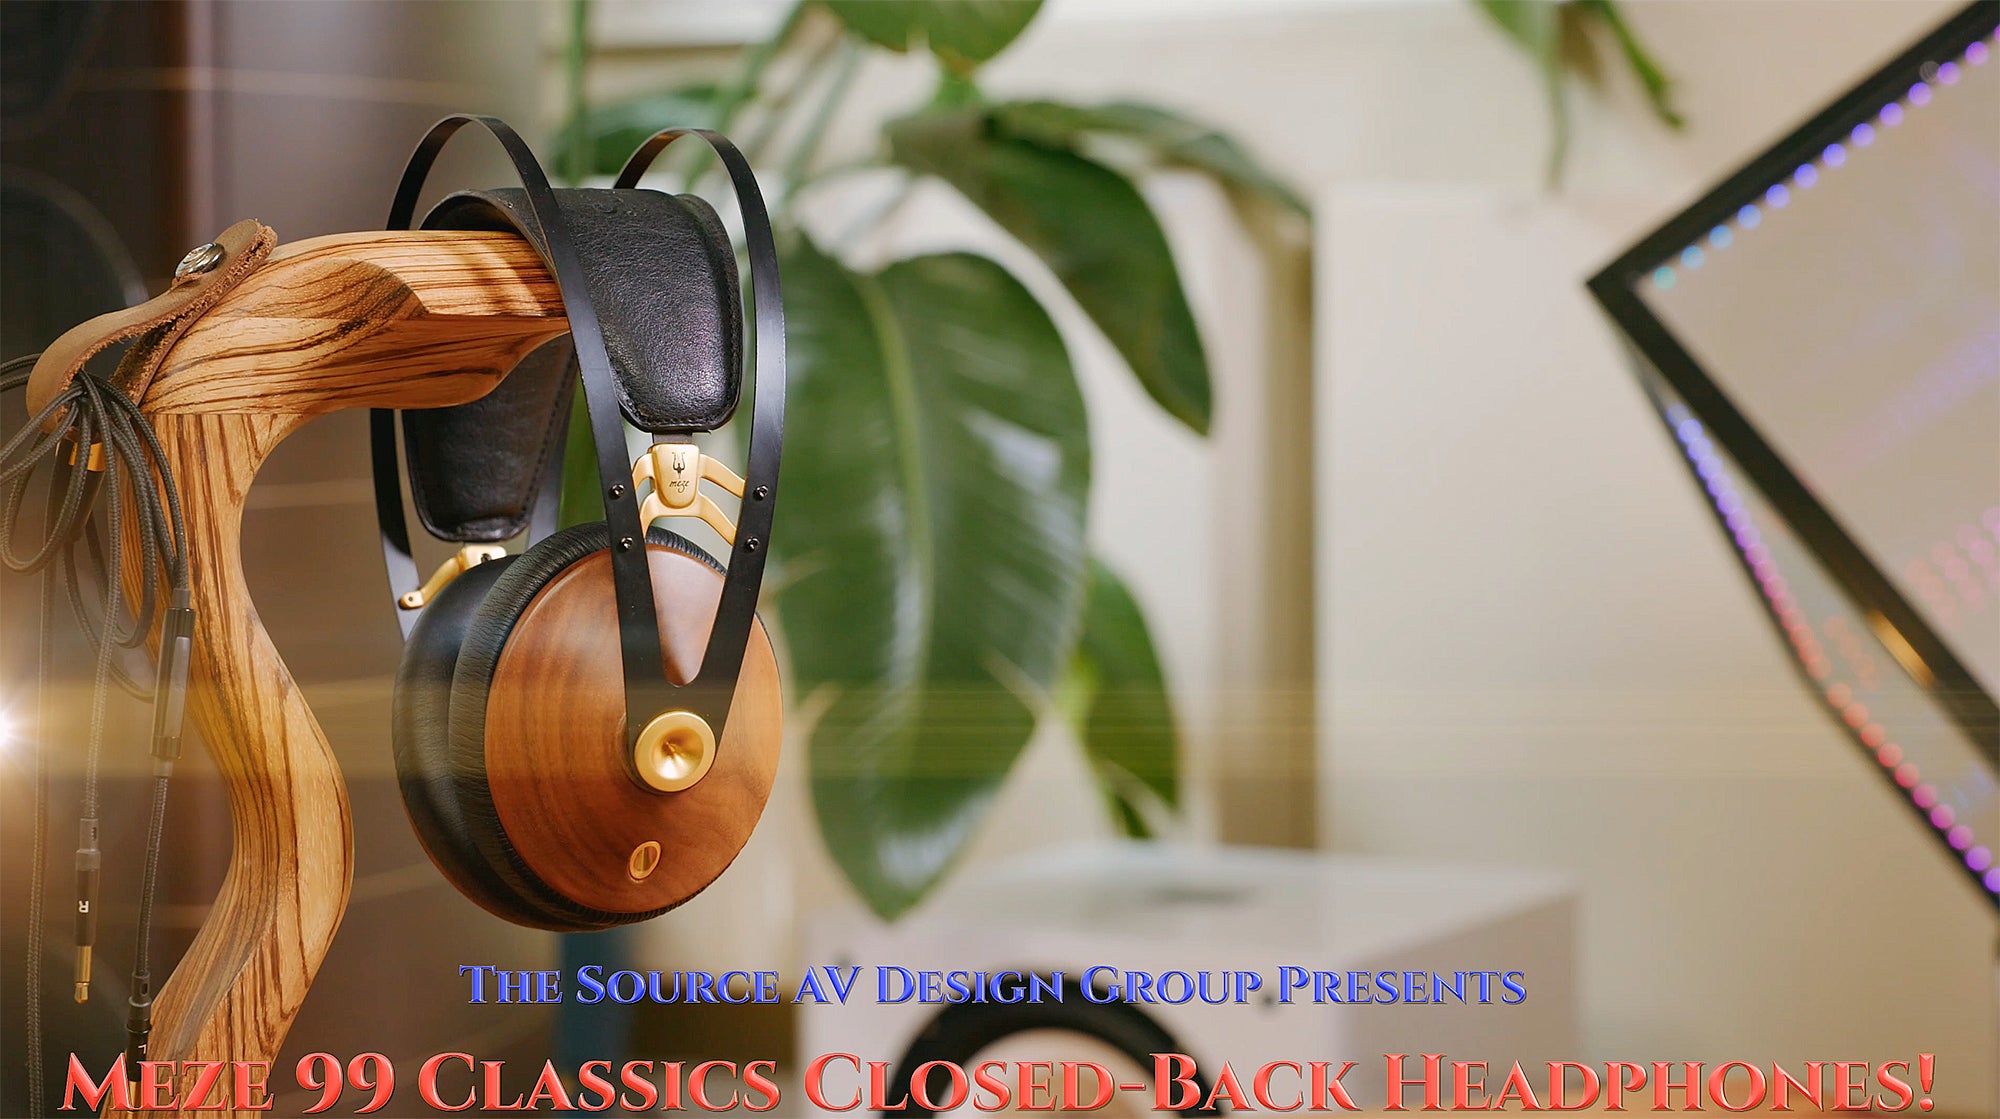 Meze 99 Classics Closed-back Headphones!